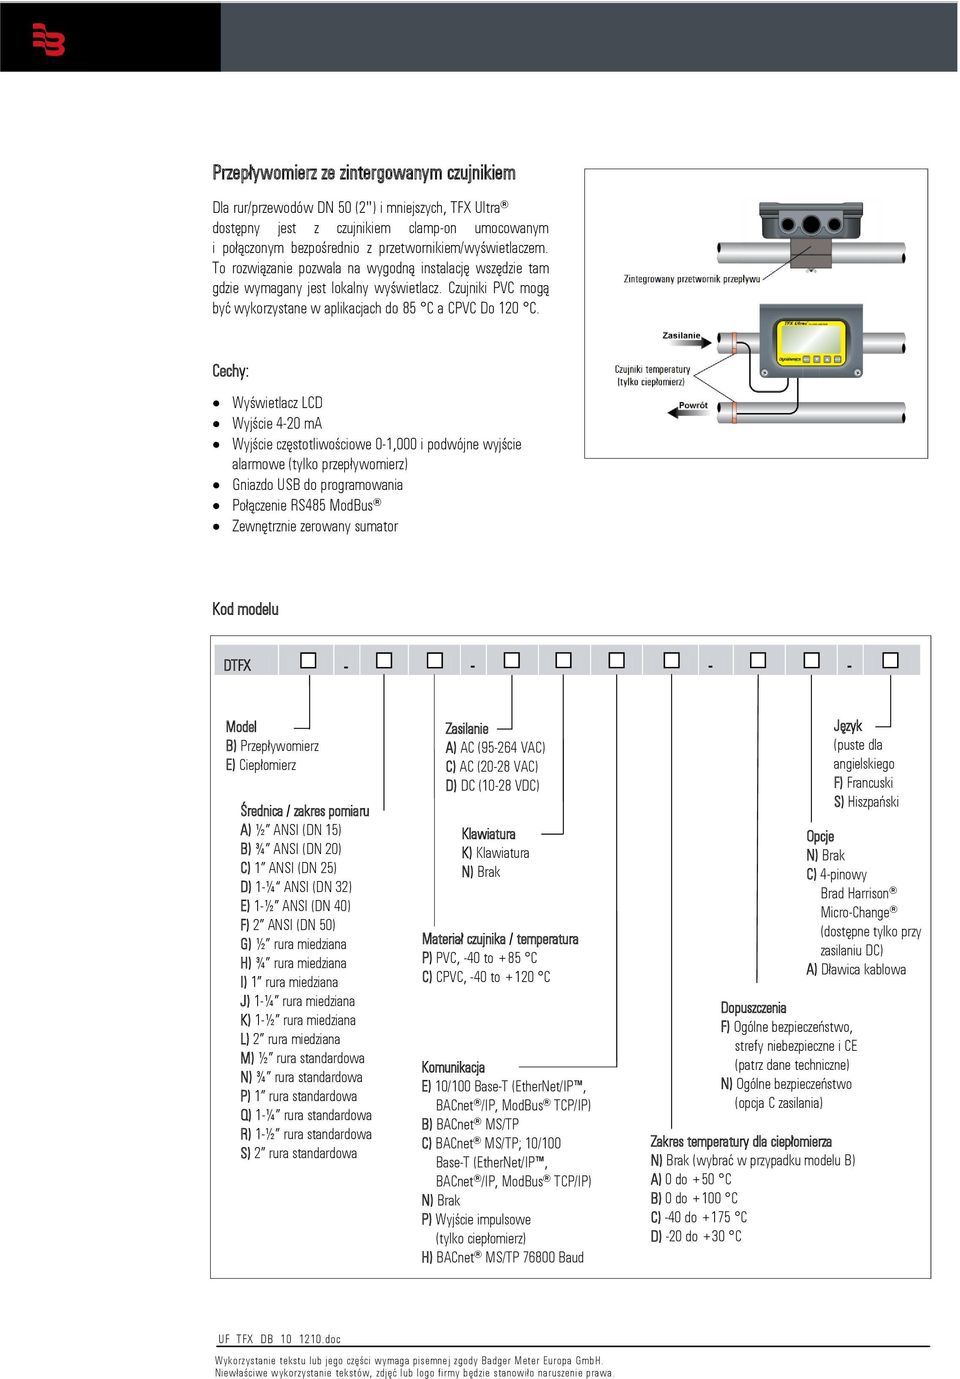 Cechy: Wyświetlacz LCD Wyjście 4-20 ma Wyjście częstotliwościowe 0-1,000 i podwójne wyjście alarmowe (tylko przepływomierz) Gniazdo USB do programowania Połączenie RS485 ModBus Zewnętrznie zerowany